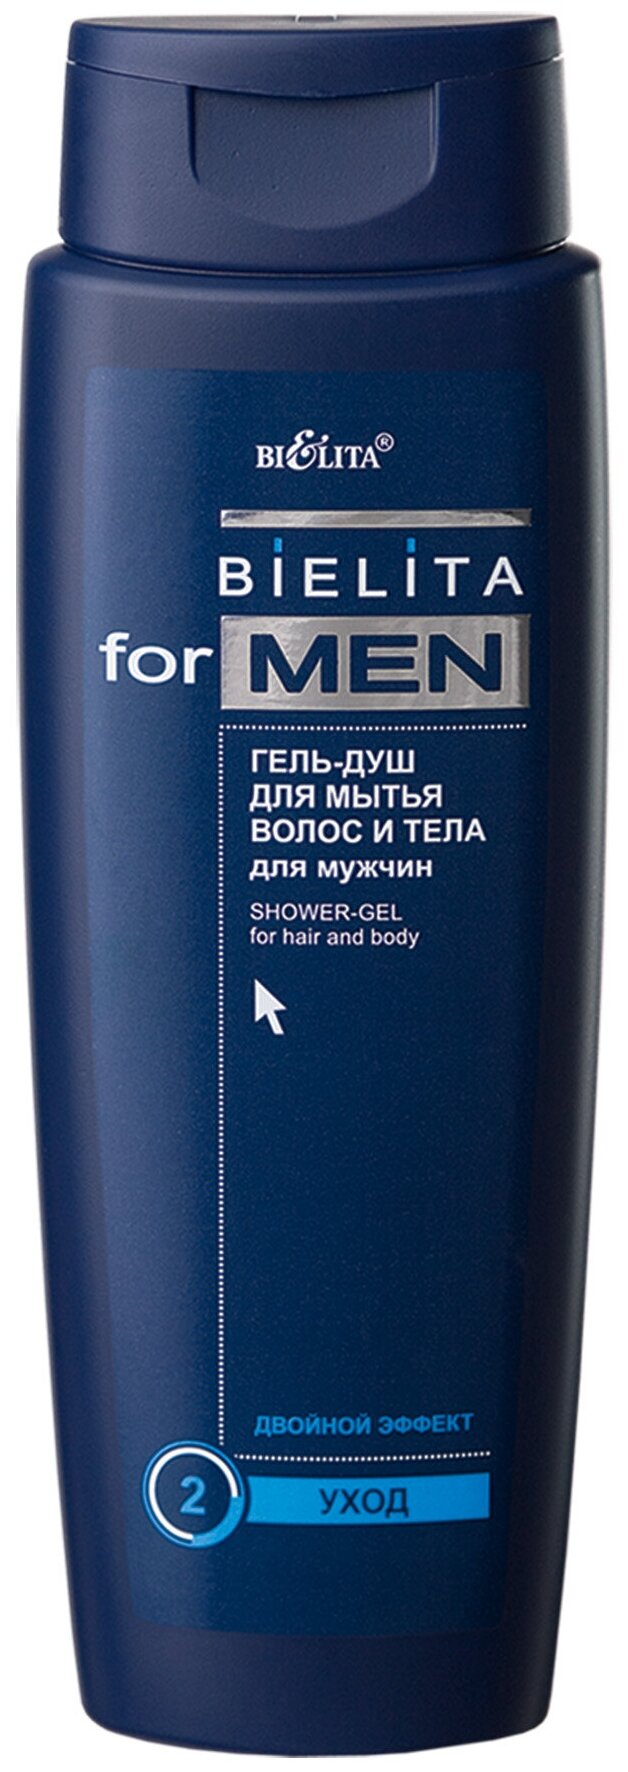 Гель для душа Bielita for men для волос и тела, 400 мл, 456 г